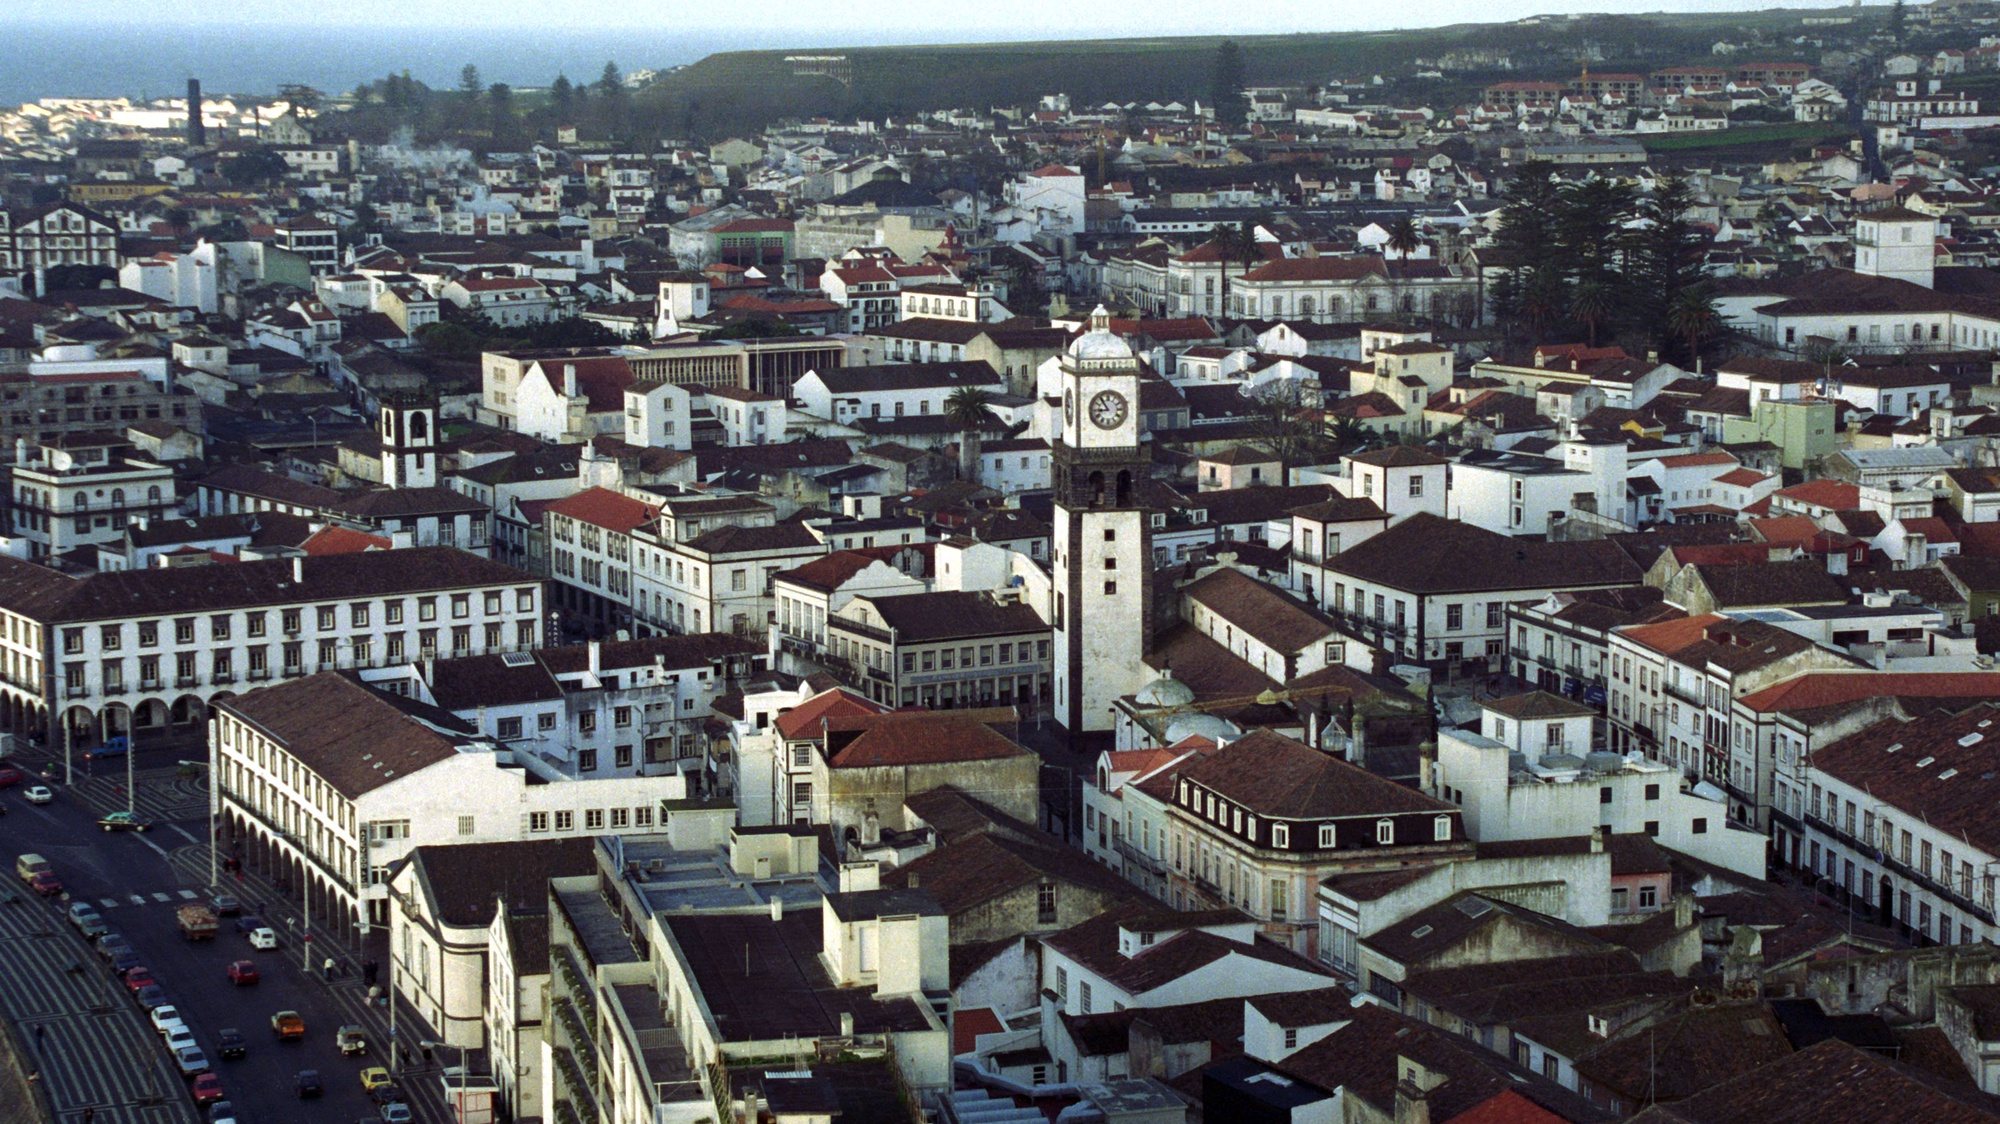 Vista panorâmica sobre Ponta Delgada, Açores, a 31 de janeiro de 1990.

Lusa